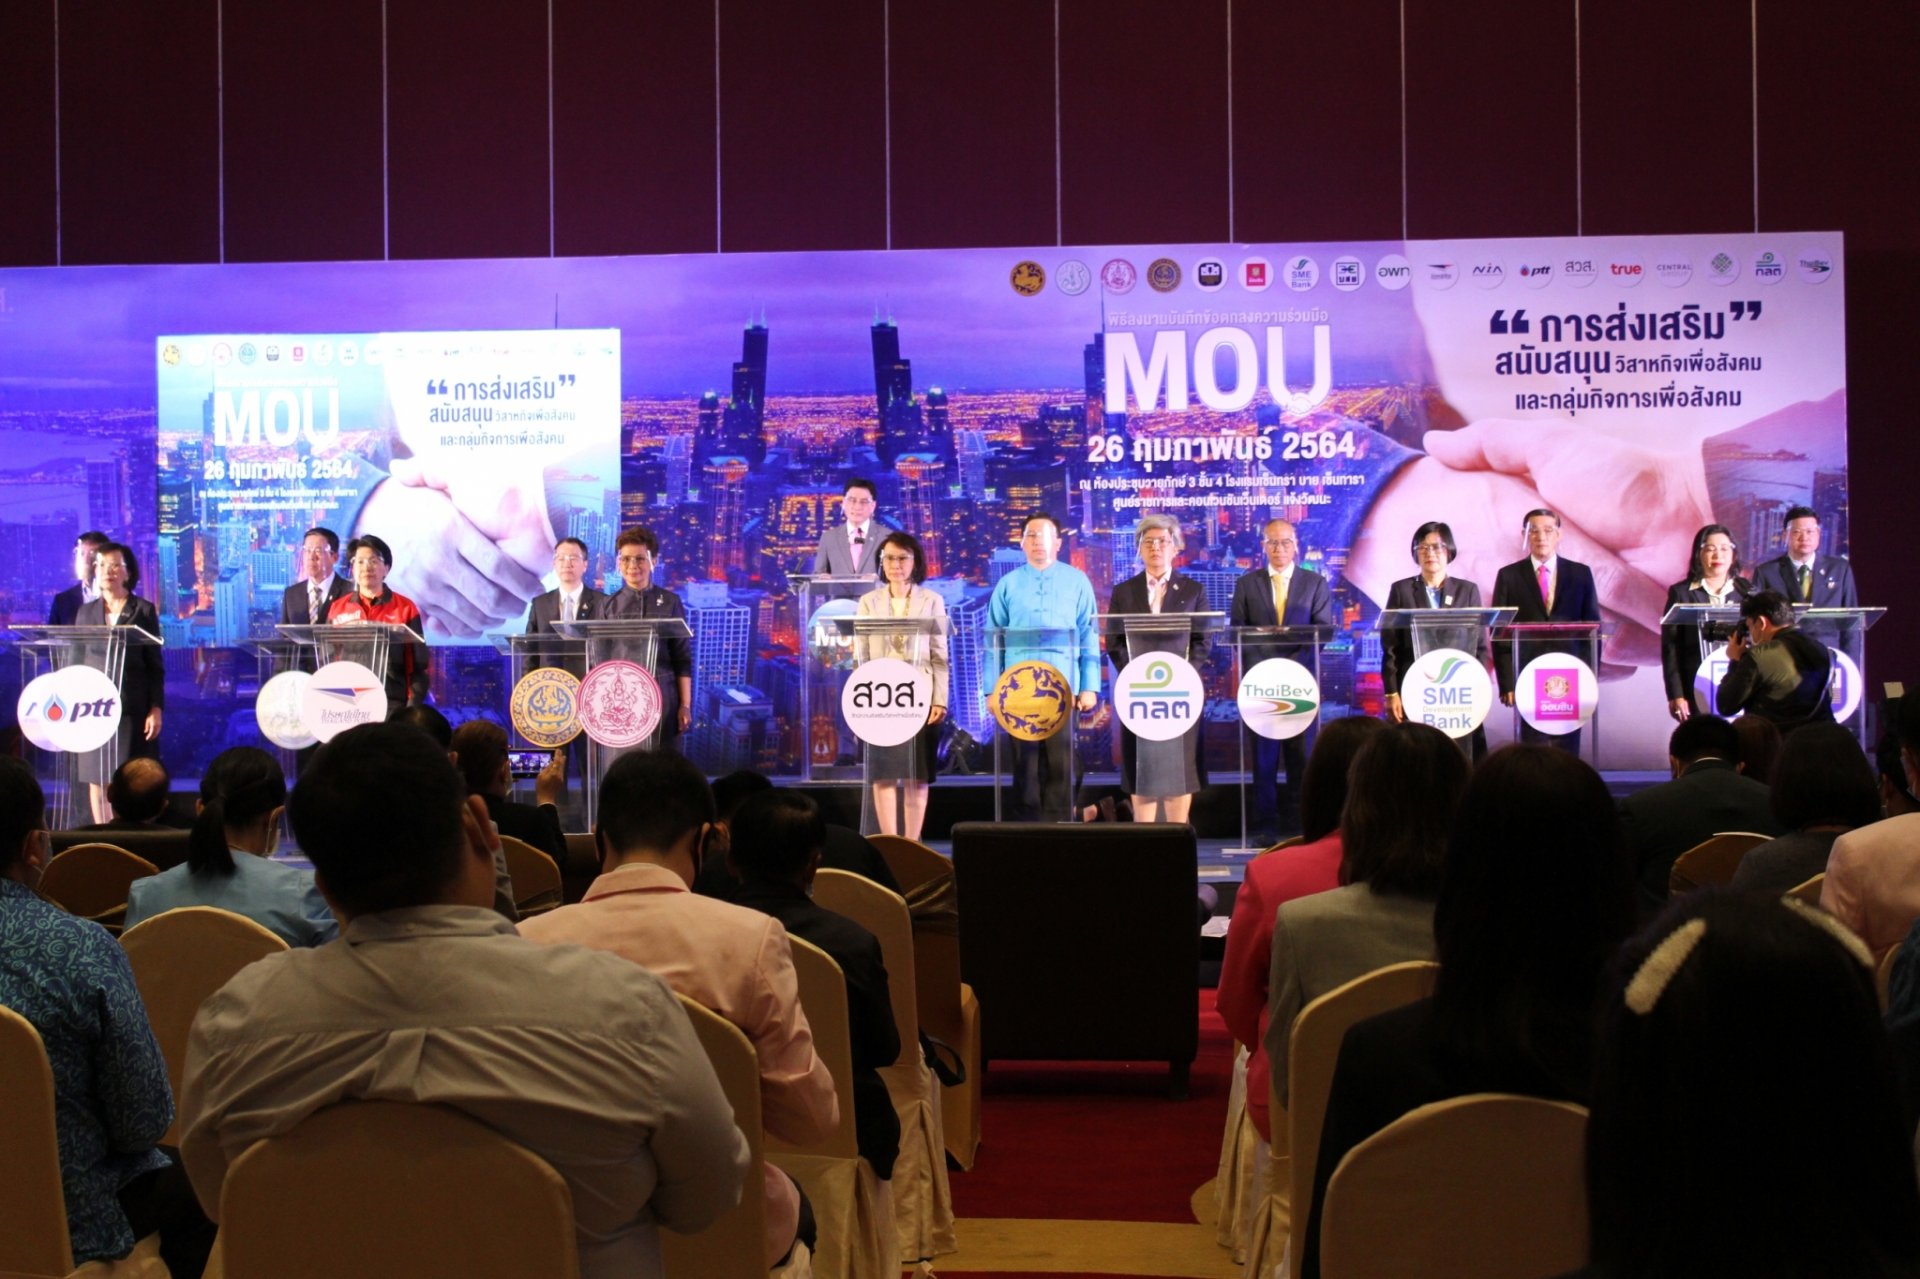 มหาดไทยร่วมพิธีลงนามบันทึกข้อตกลงความร่วมมือ (MOU) การส่งเสริม สนับสนุนวิสาหกิจเพื่อสังคม และกลุ่มกิจการเพื่อสังคม